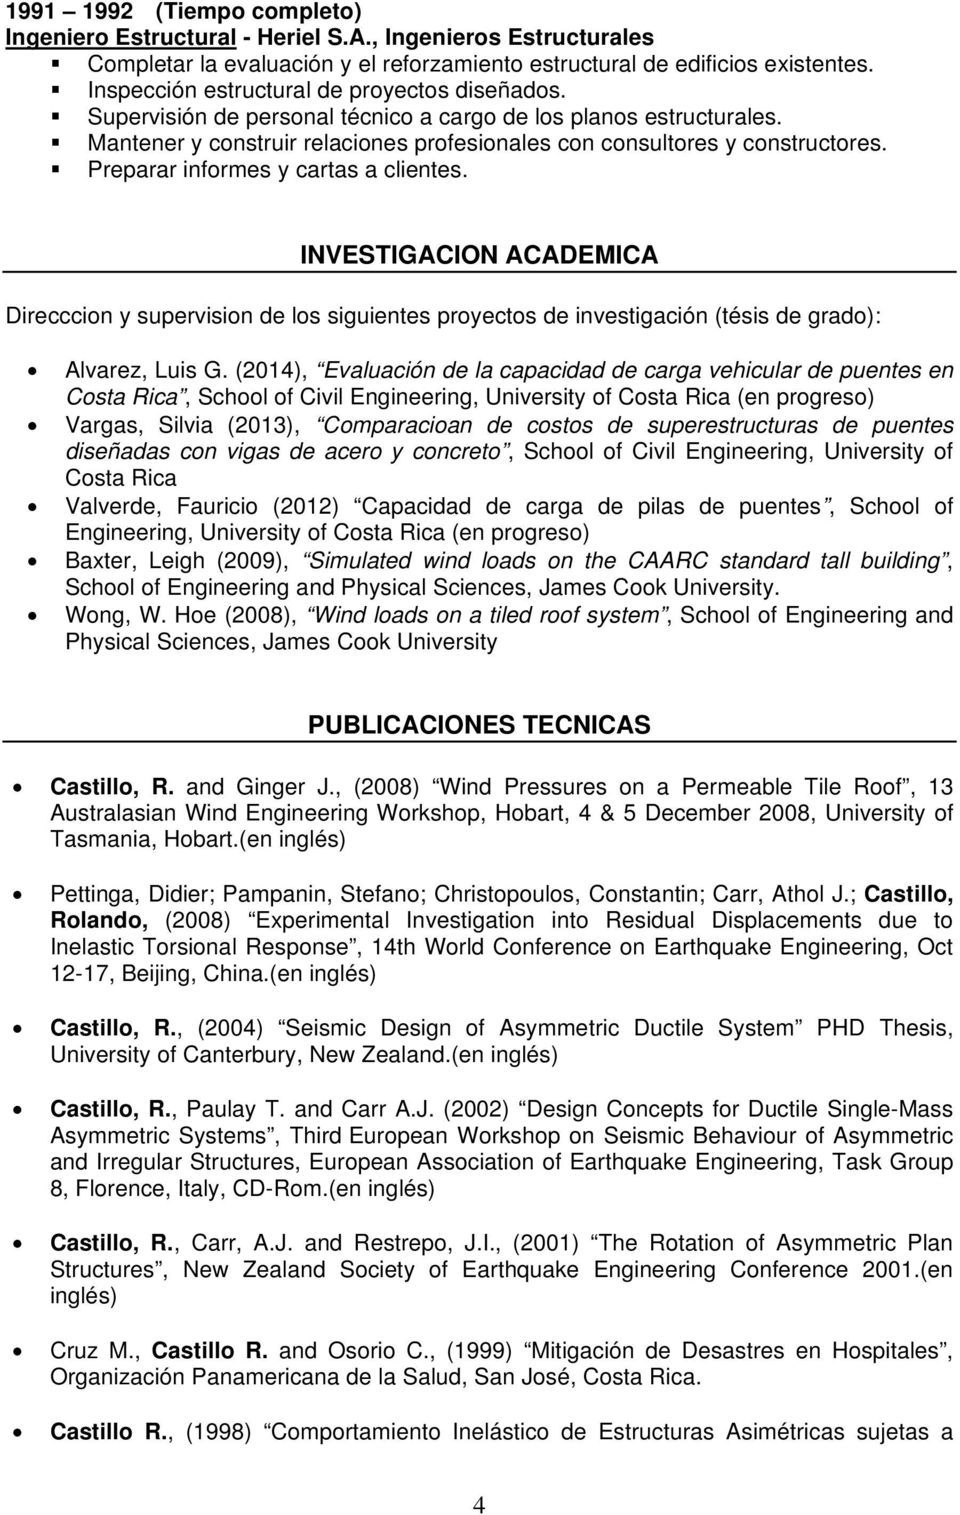 INVESTIGACION ACADEMICA Direcccion y supervision de los siguientes proyectos de investigación (tésis de grado): Alvarez, Luis G.